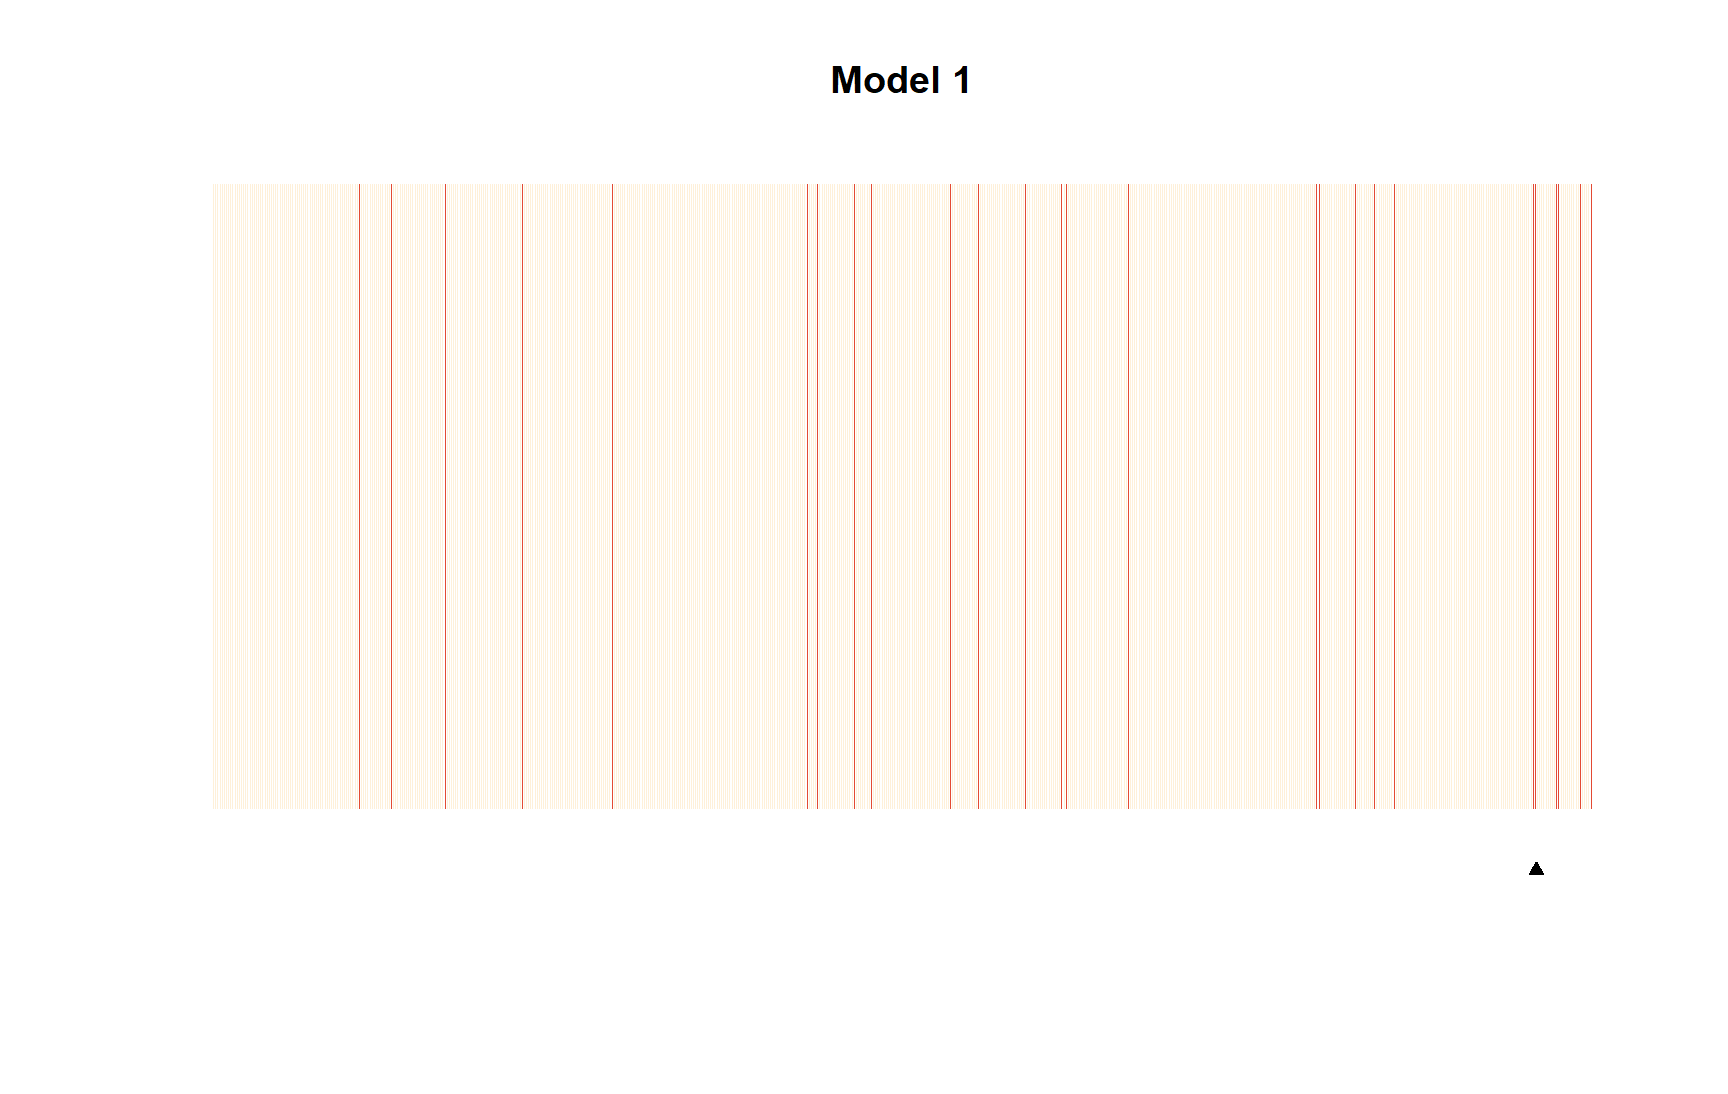 Separation plots de modelos 1 y 3